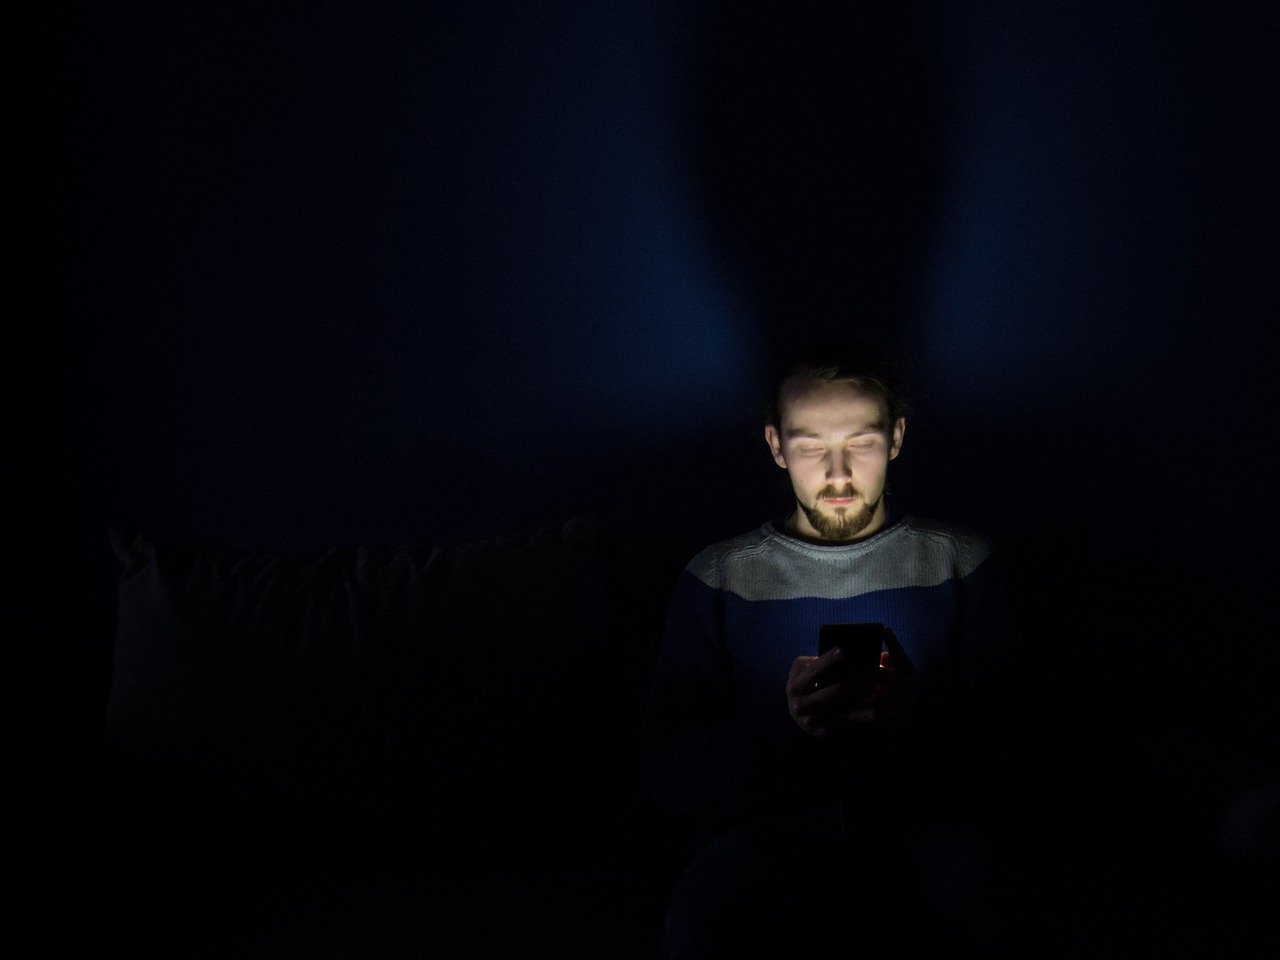 4 důvody, proč byste před spaním neměli používat telefon